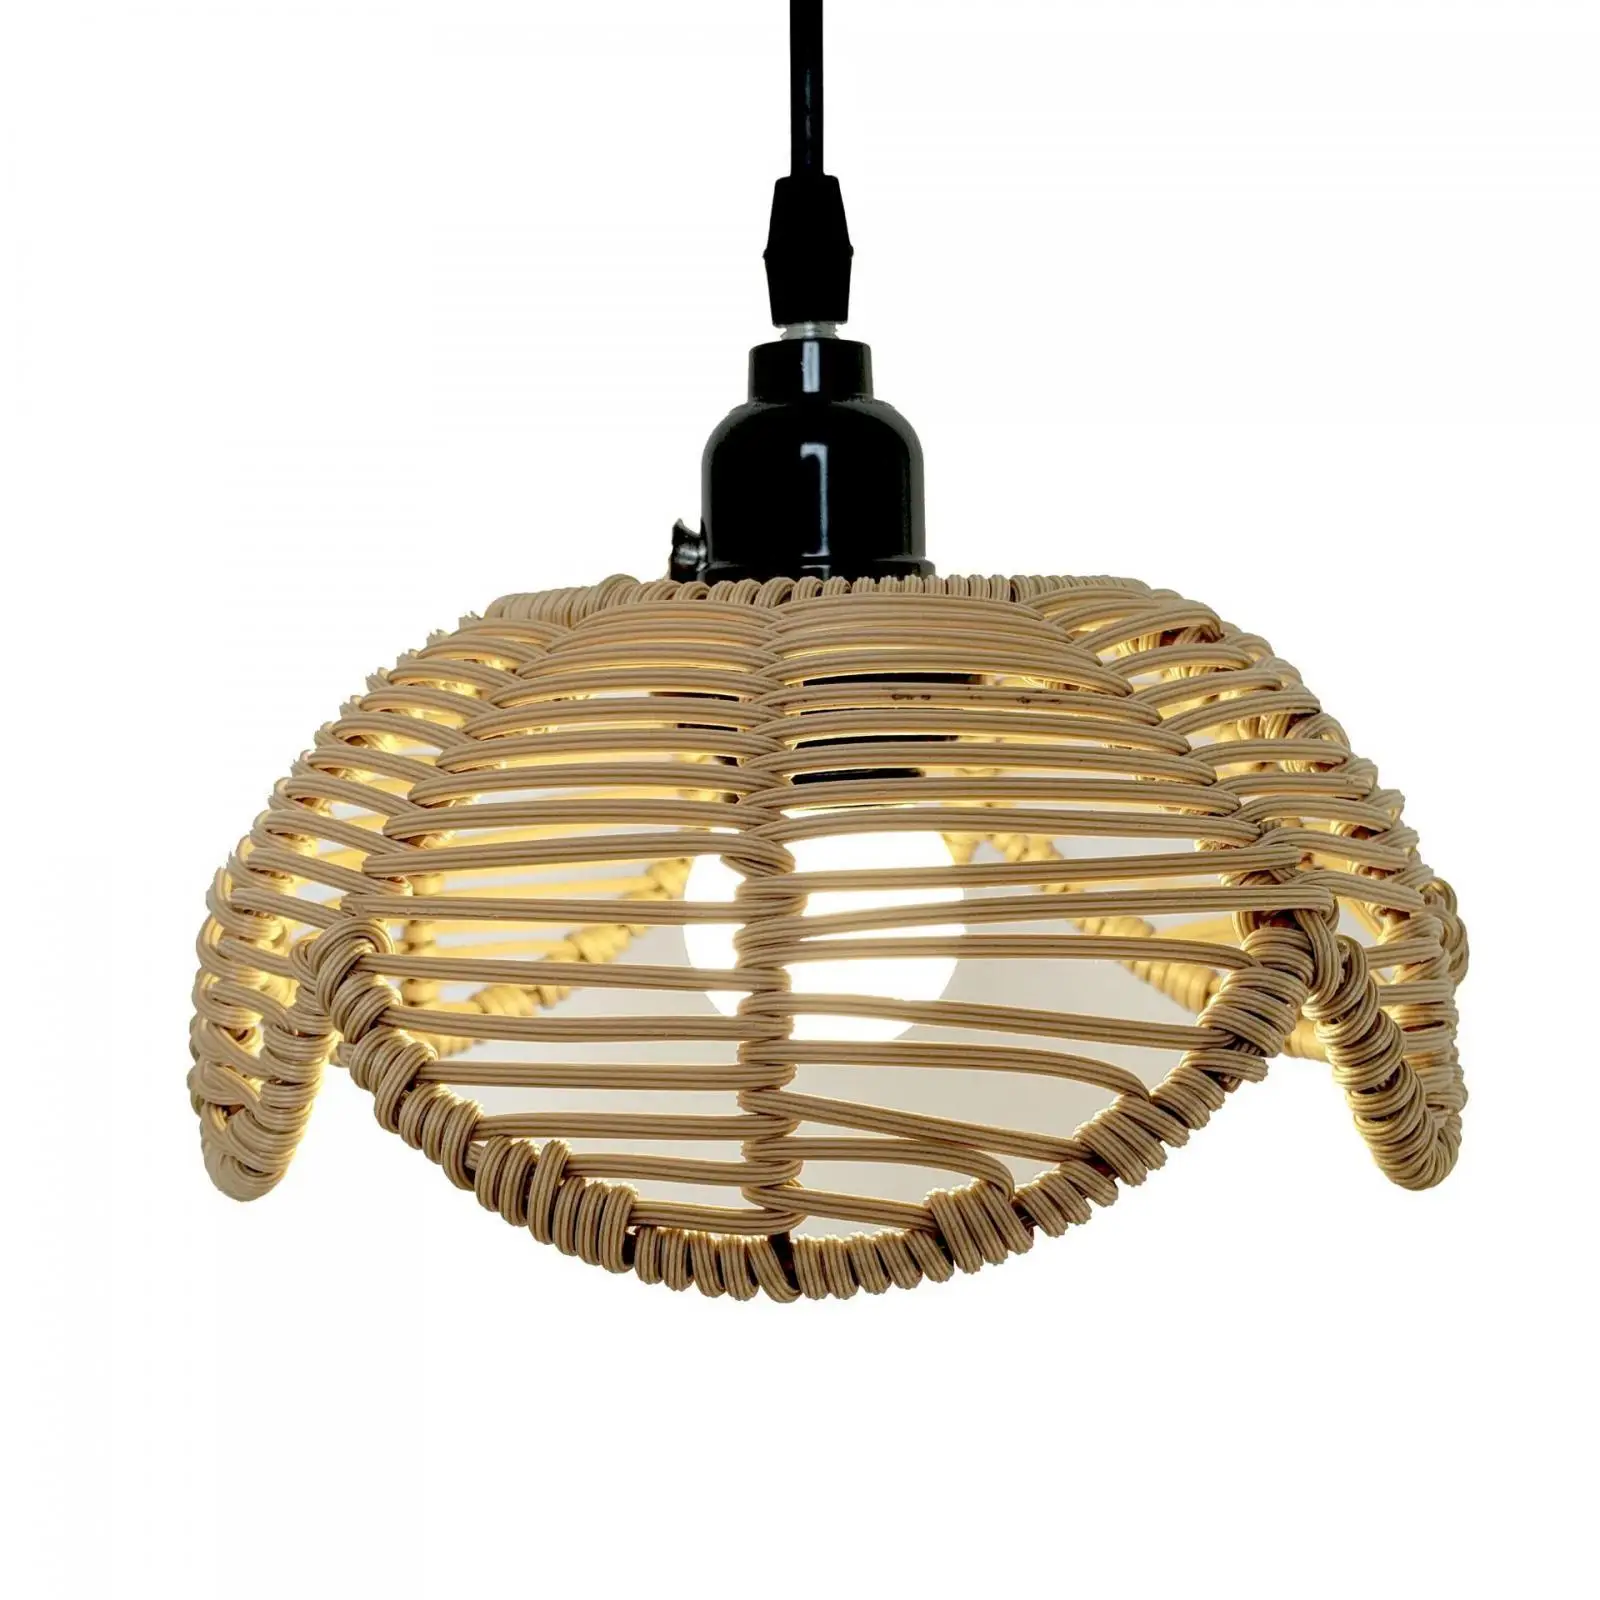 Rattan Lamp Shade Decor Ceiling Pendant Light Cover for Kitchen Restaurant